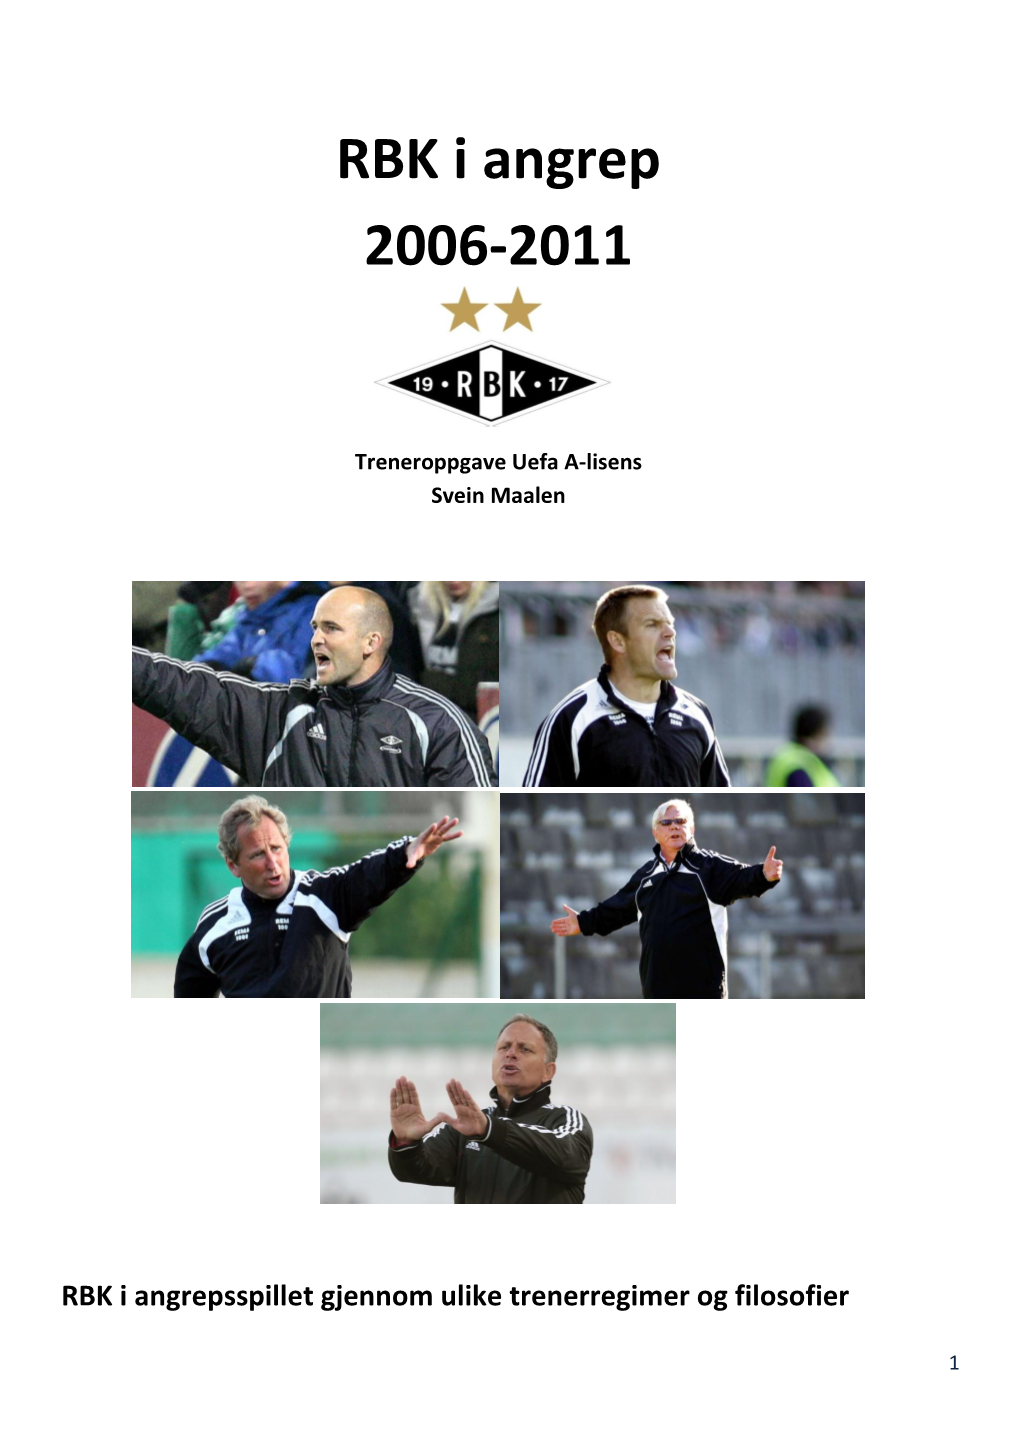 RBK I Angrep 2006-2011